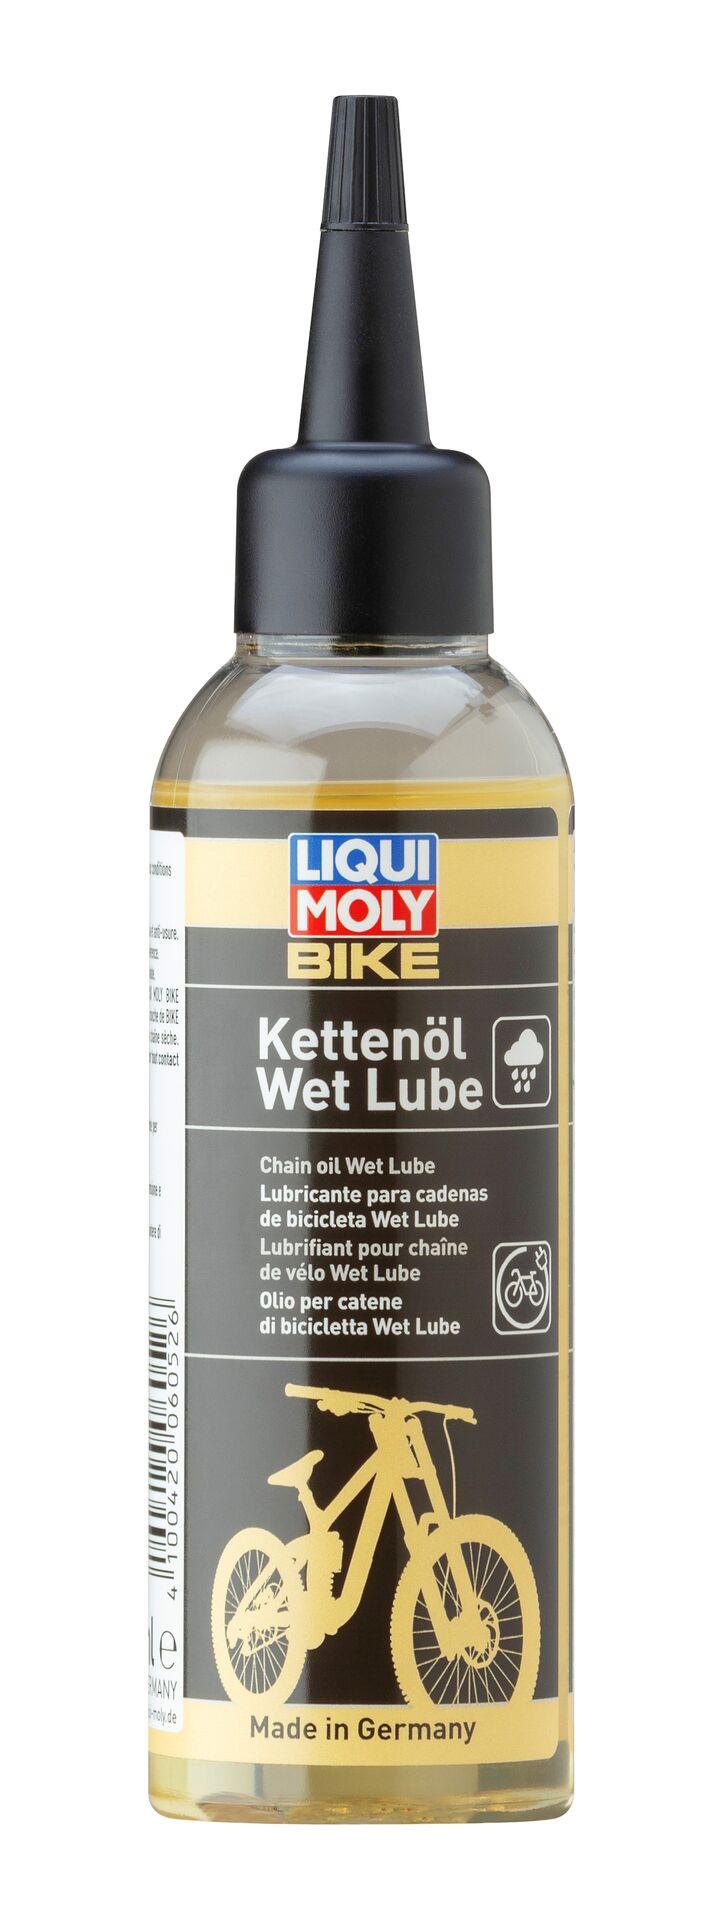 Liqui Moly Bike Kettenöl Wet Lube Fahrrad E-Bike Pflege Schmieröl 100 ml